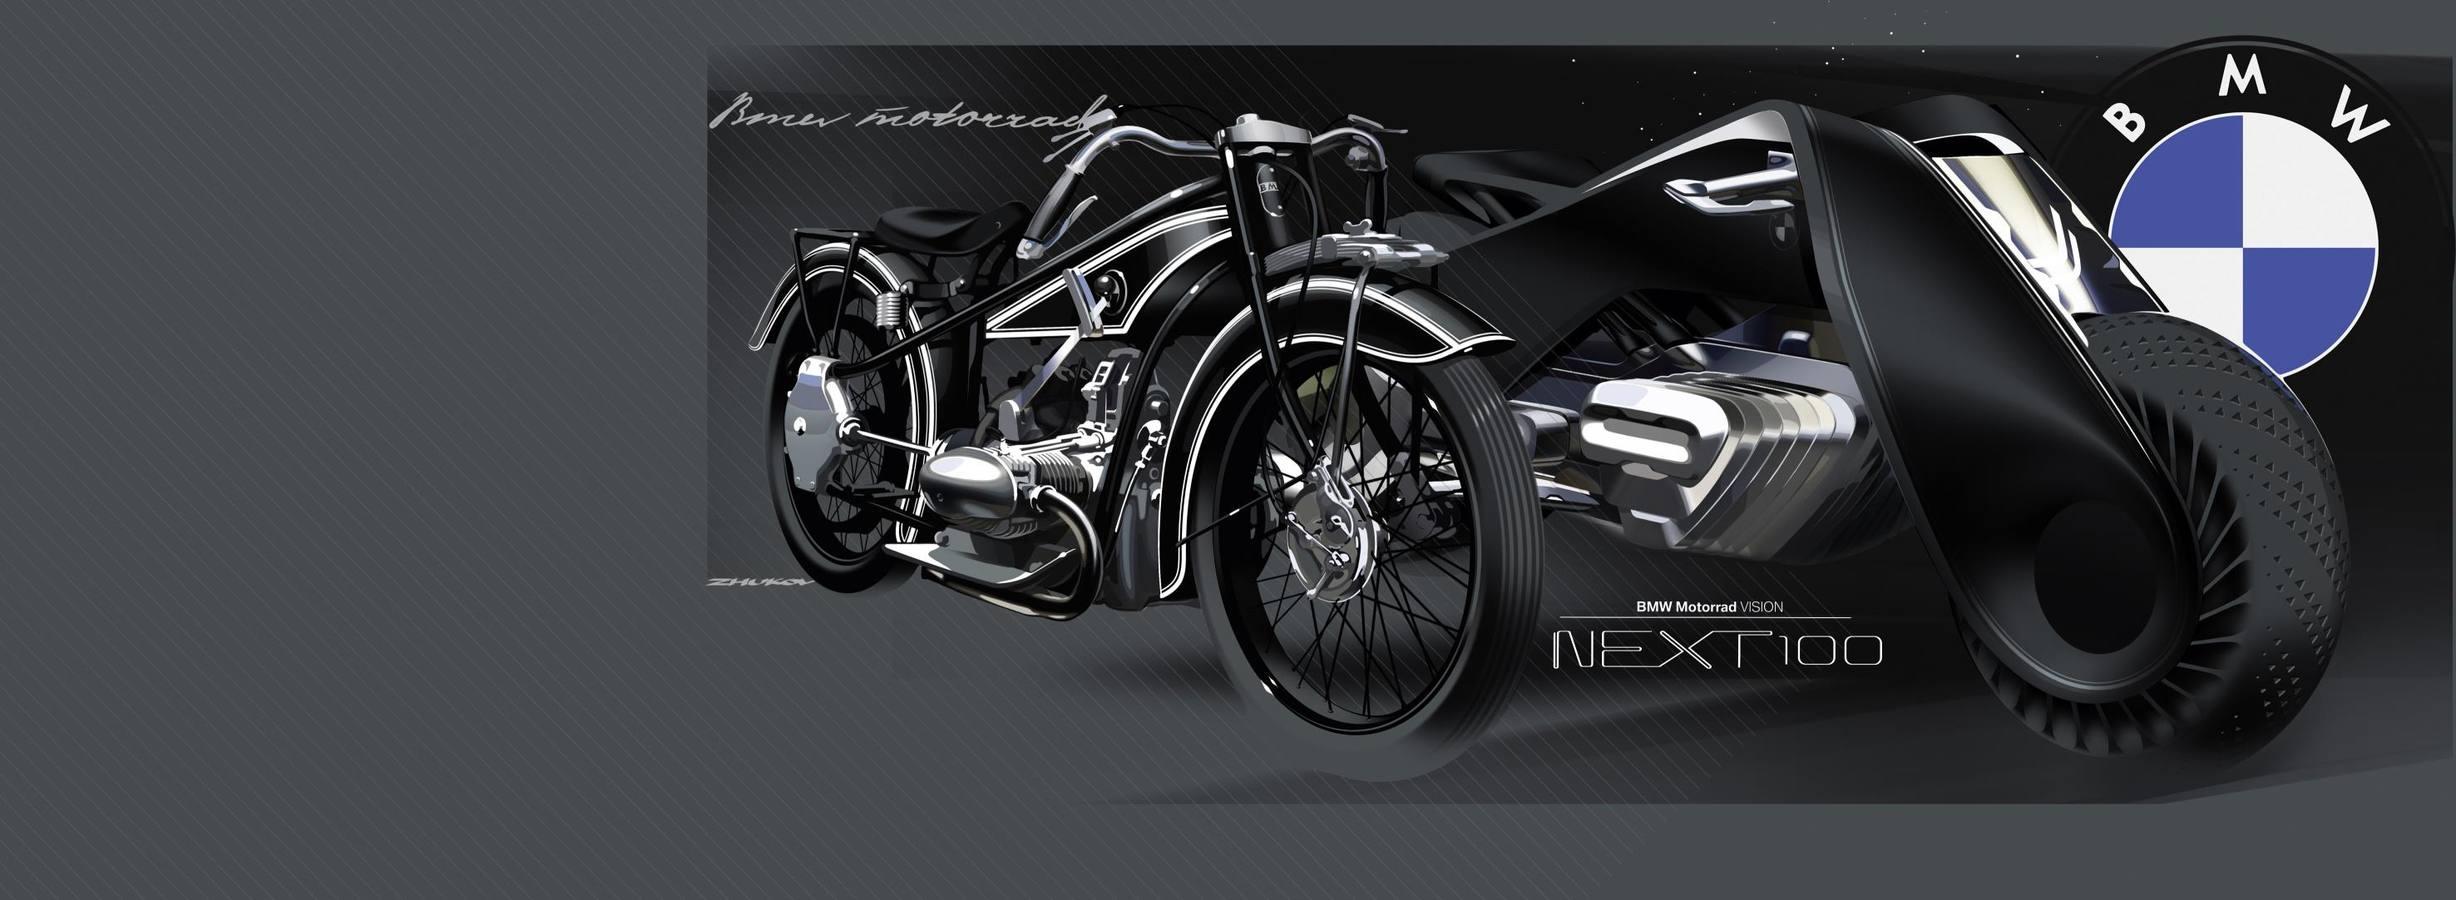 La BMW Motorrad VISION NEXT 100 personifica la idea de cómo deberían ser las motocicletas en un mundo interconectado